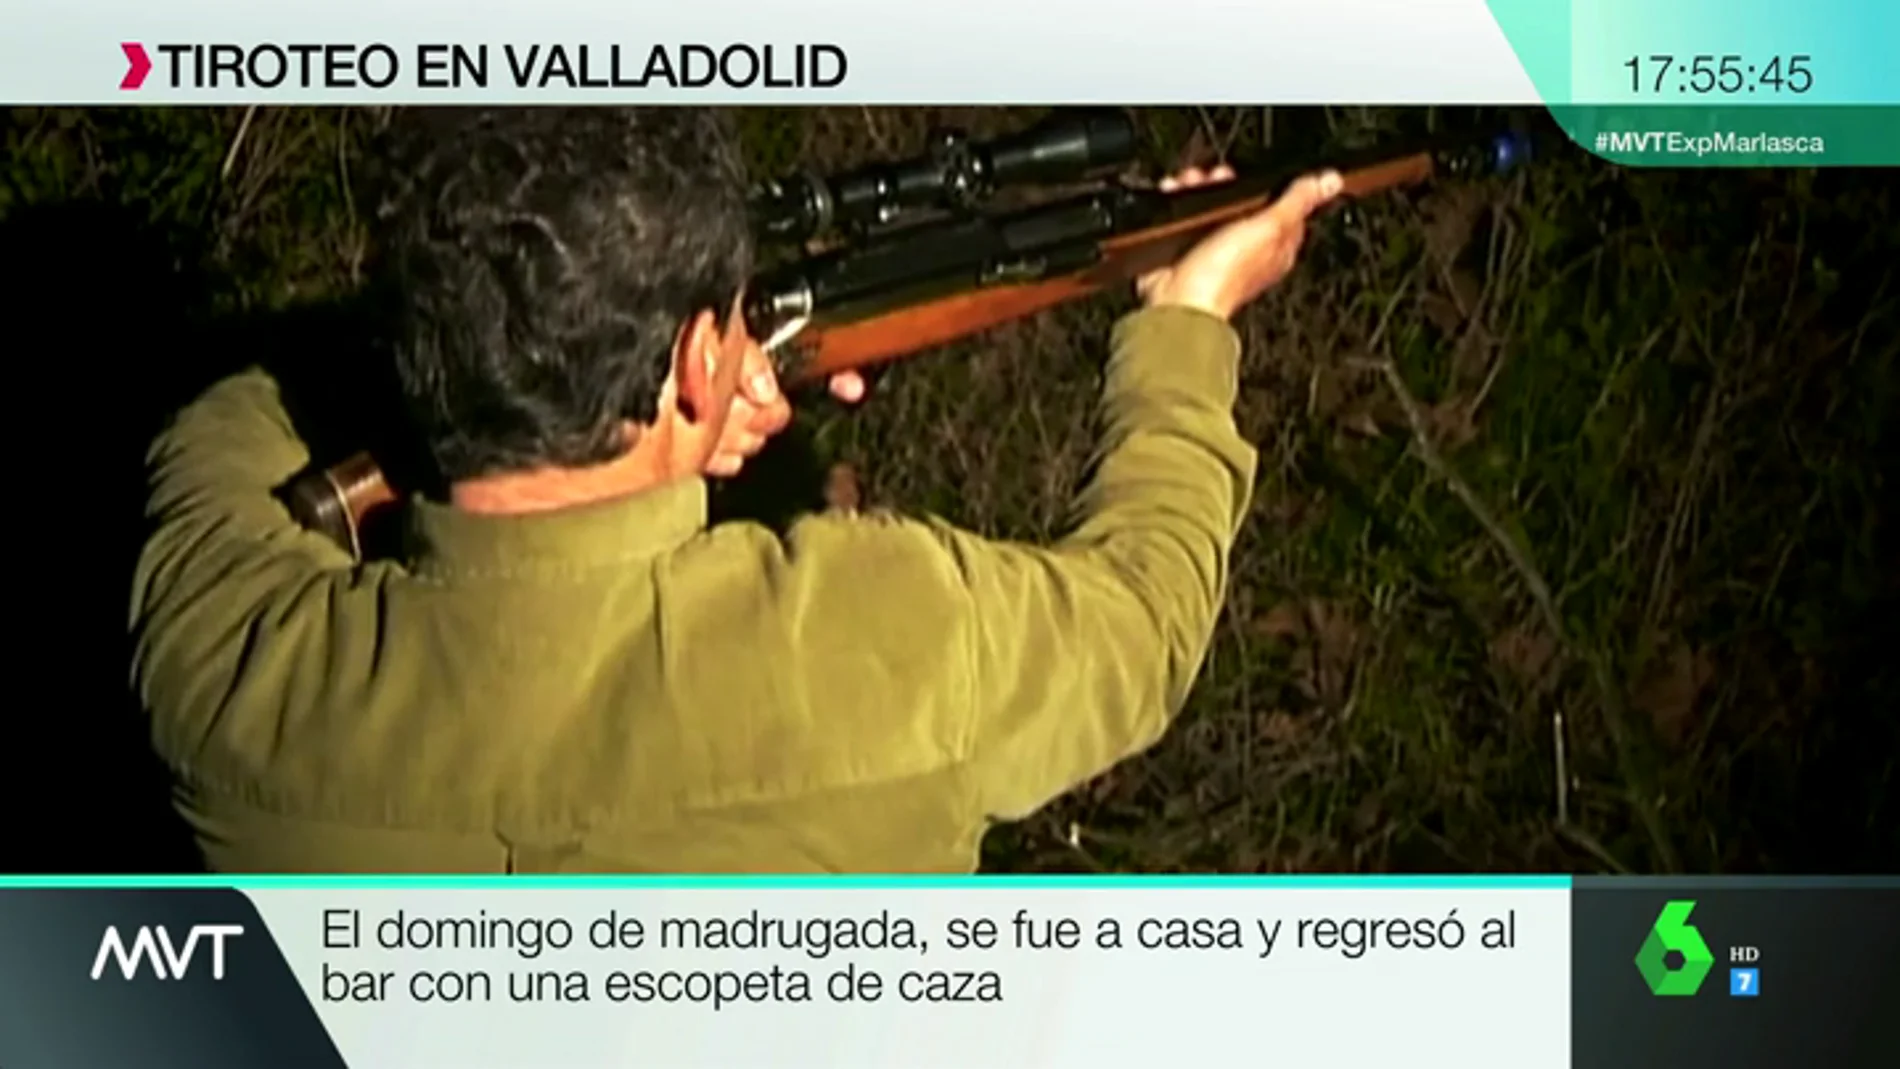 Trabajador, conflictivo, aficionado a la caza...así definen algunos vecinos al presunto asesino de un hombre en Valladolid